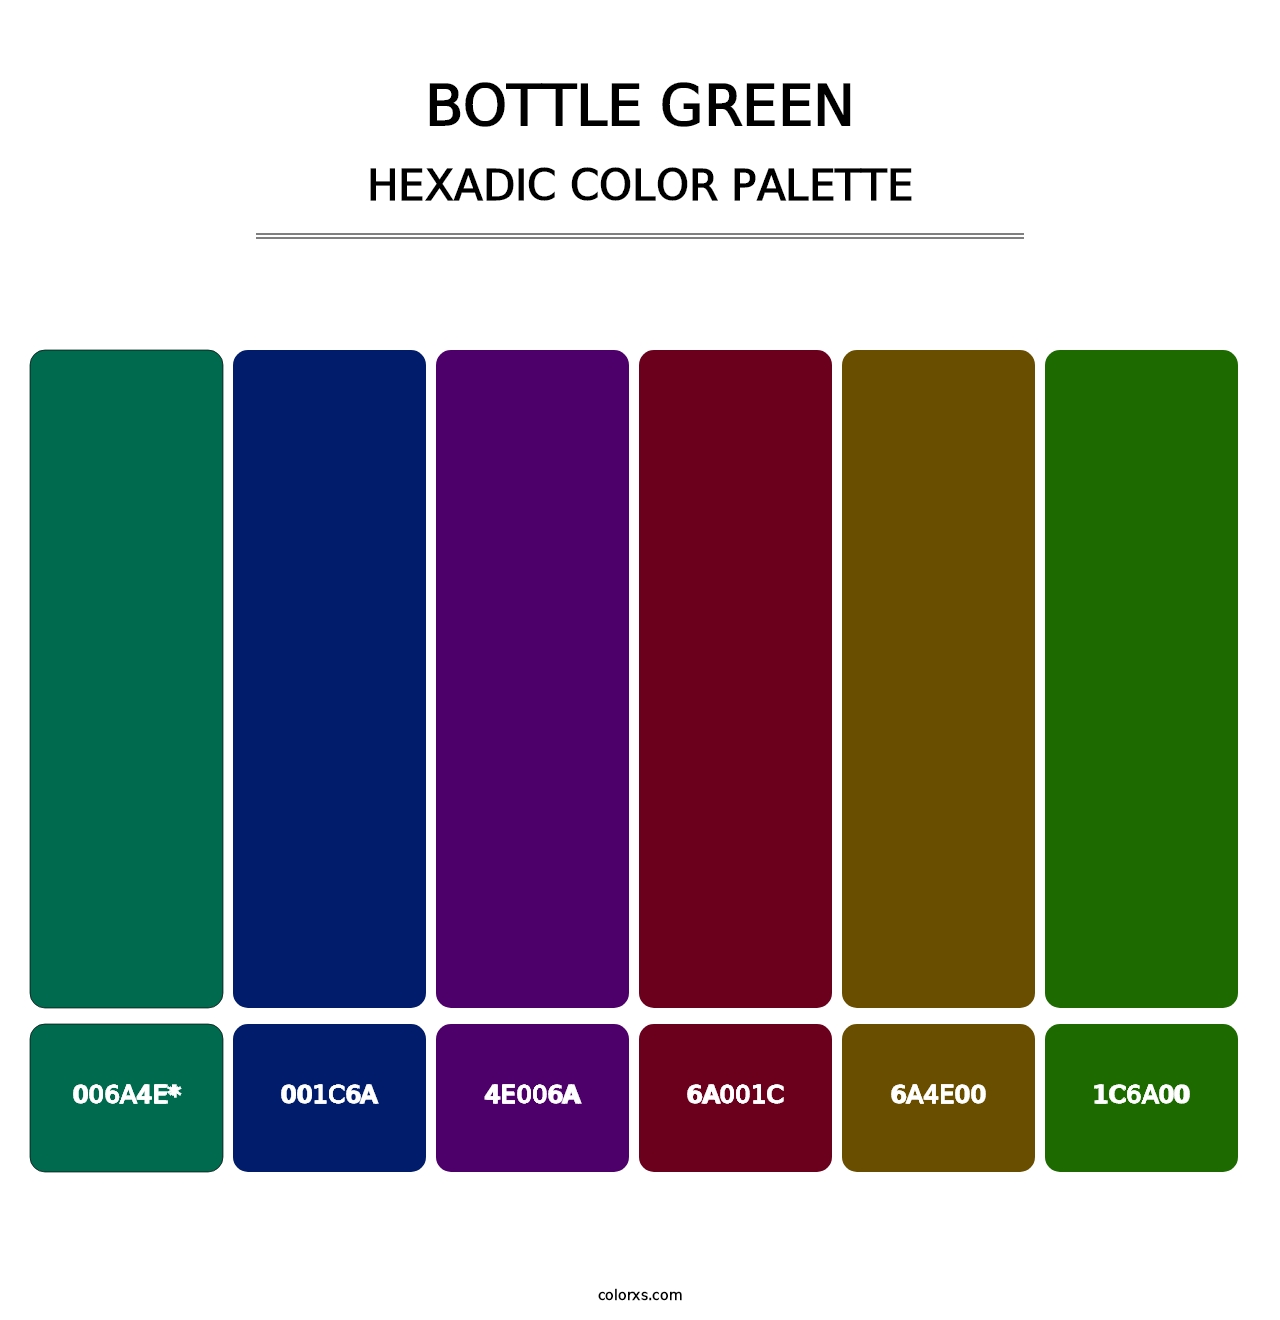 Bottle Green - Hexadic Color Palette